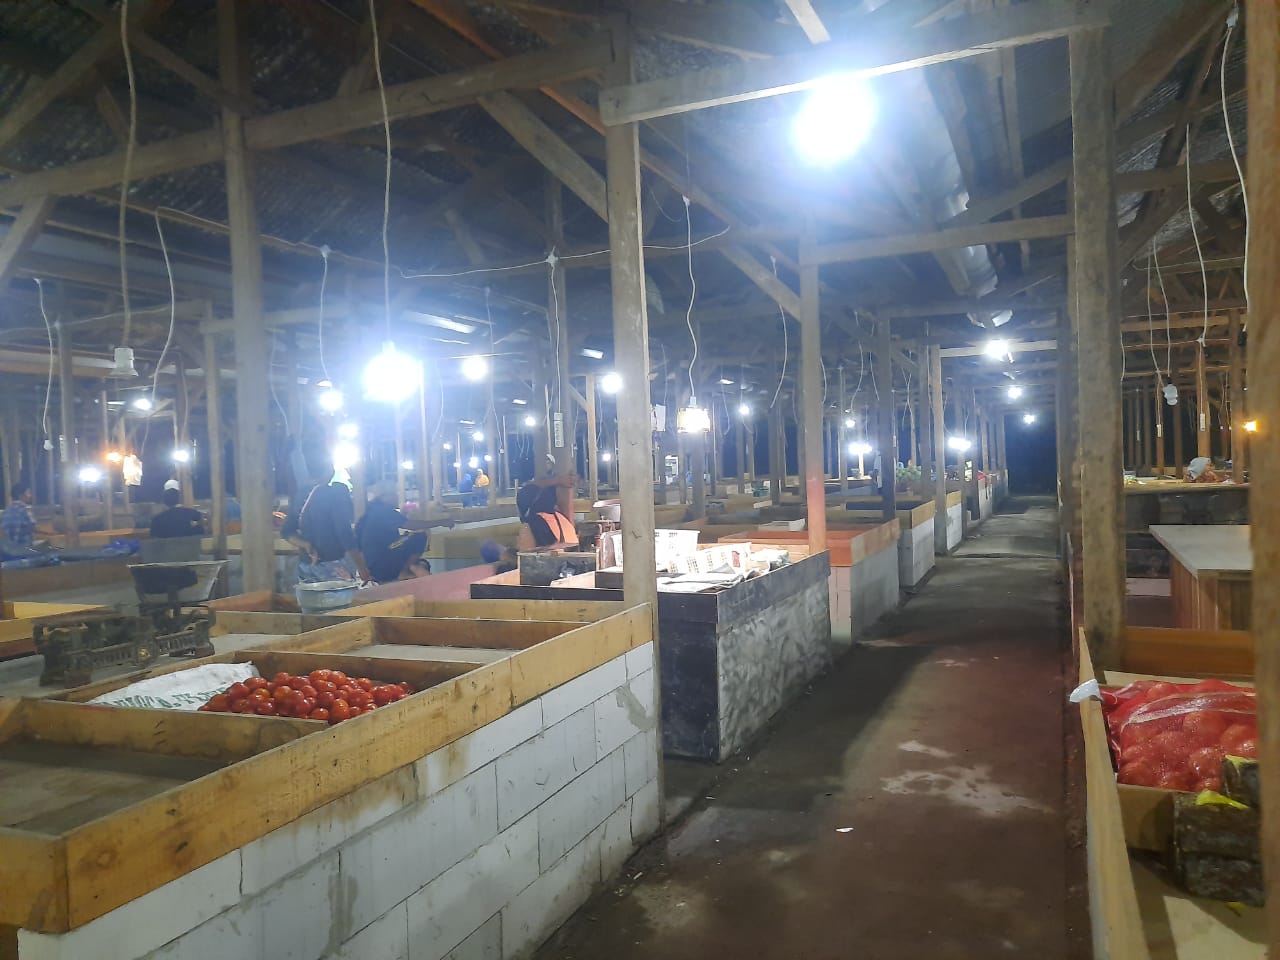 Suasana tampak sepi di pasar sayur dan buah eks Penjara Koblen Surabaya. Selain sepi pembeli, lapak para pedagangan juga sepi dagangan. (Foto: Alief Sambogo/Ngopibareng.id)